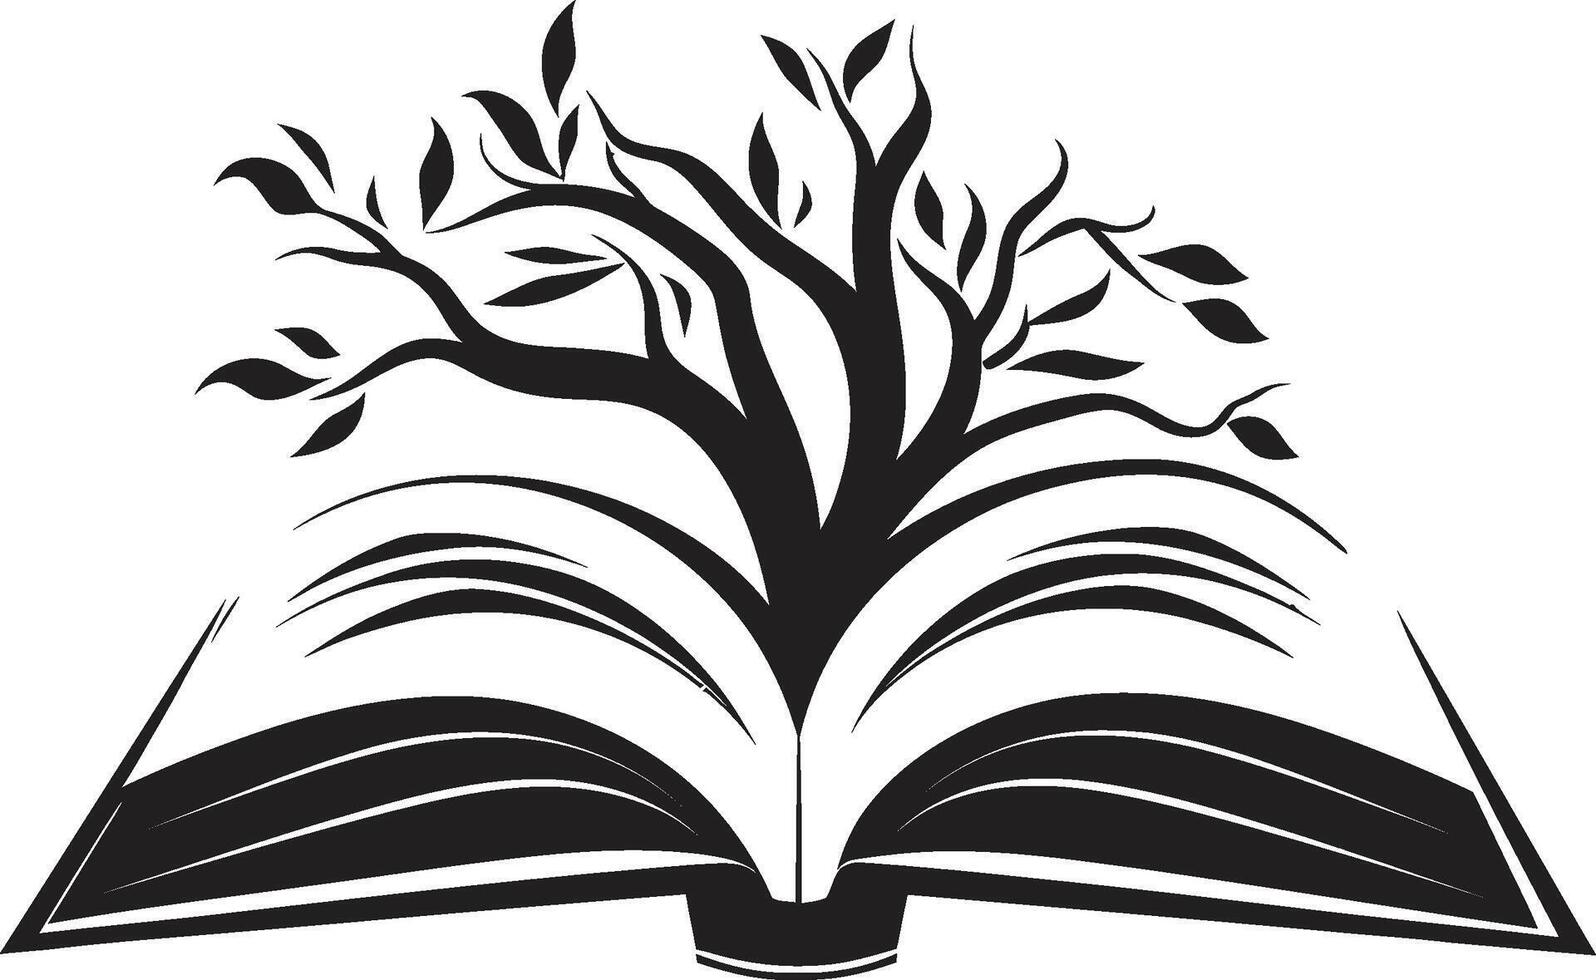 noir Buch Symbol stilvoll Emblem Design mit öffnen Buch Illustration lesen Erfahrung Symbol glatt schwarz Logo mit öffnen Buch Design vektor